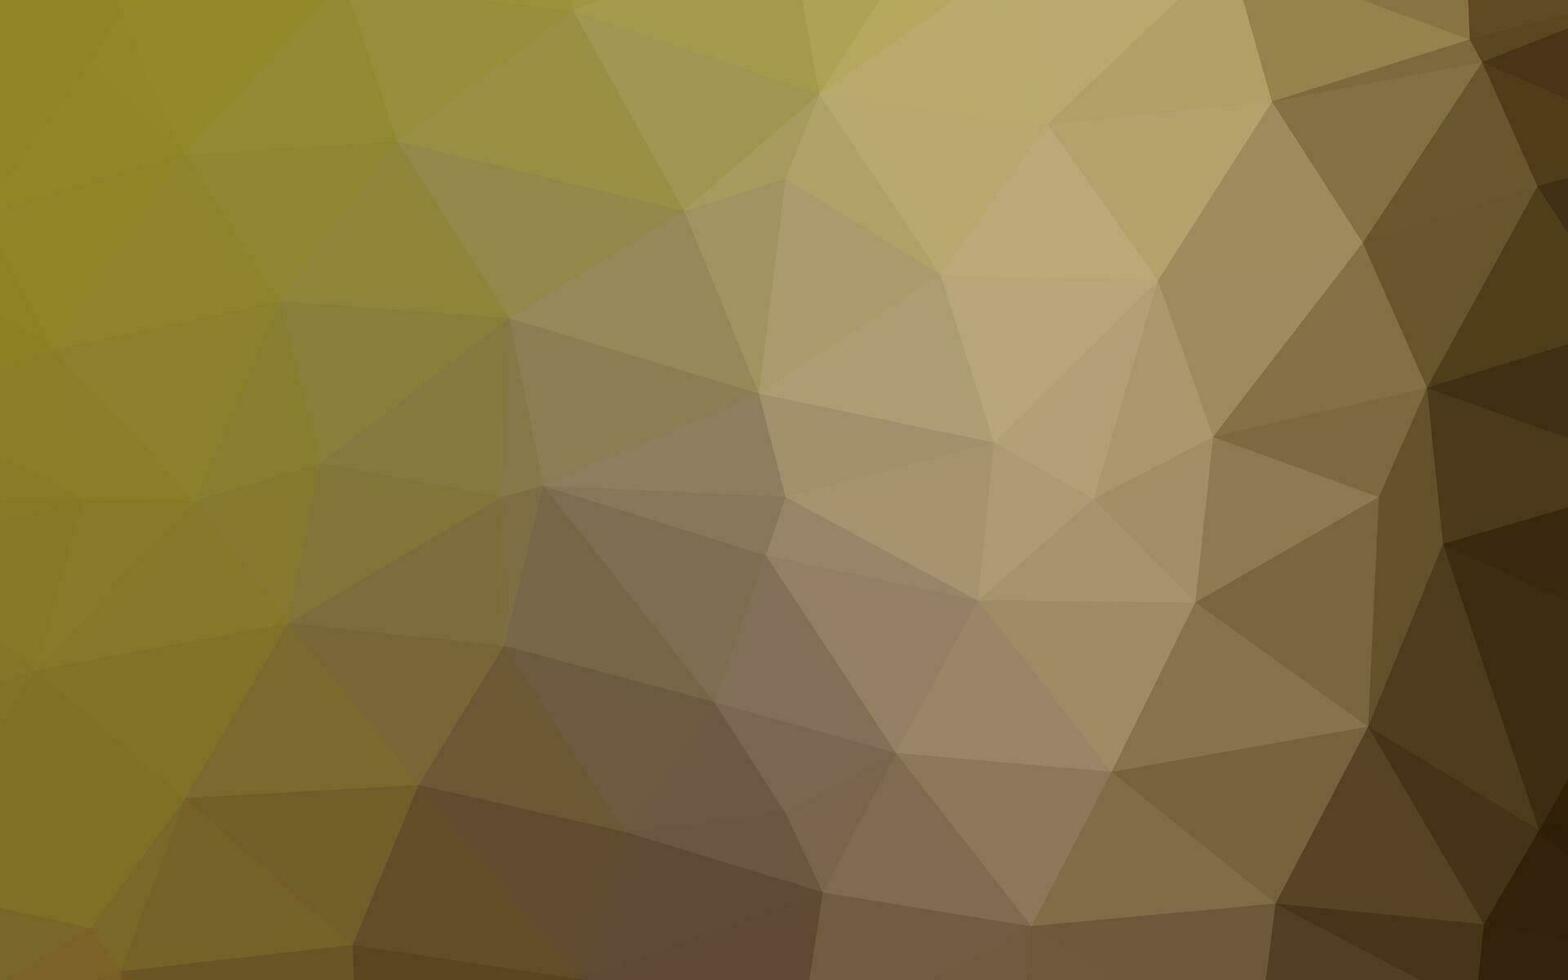 hellgrüner, gelber Vektor abstrakter Mosaikhintergrund.